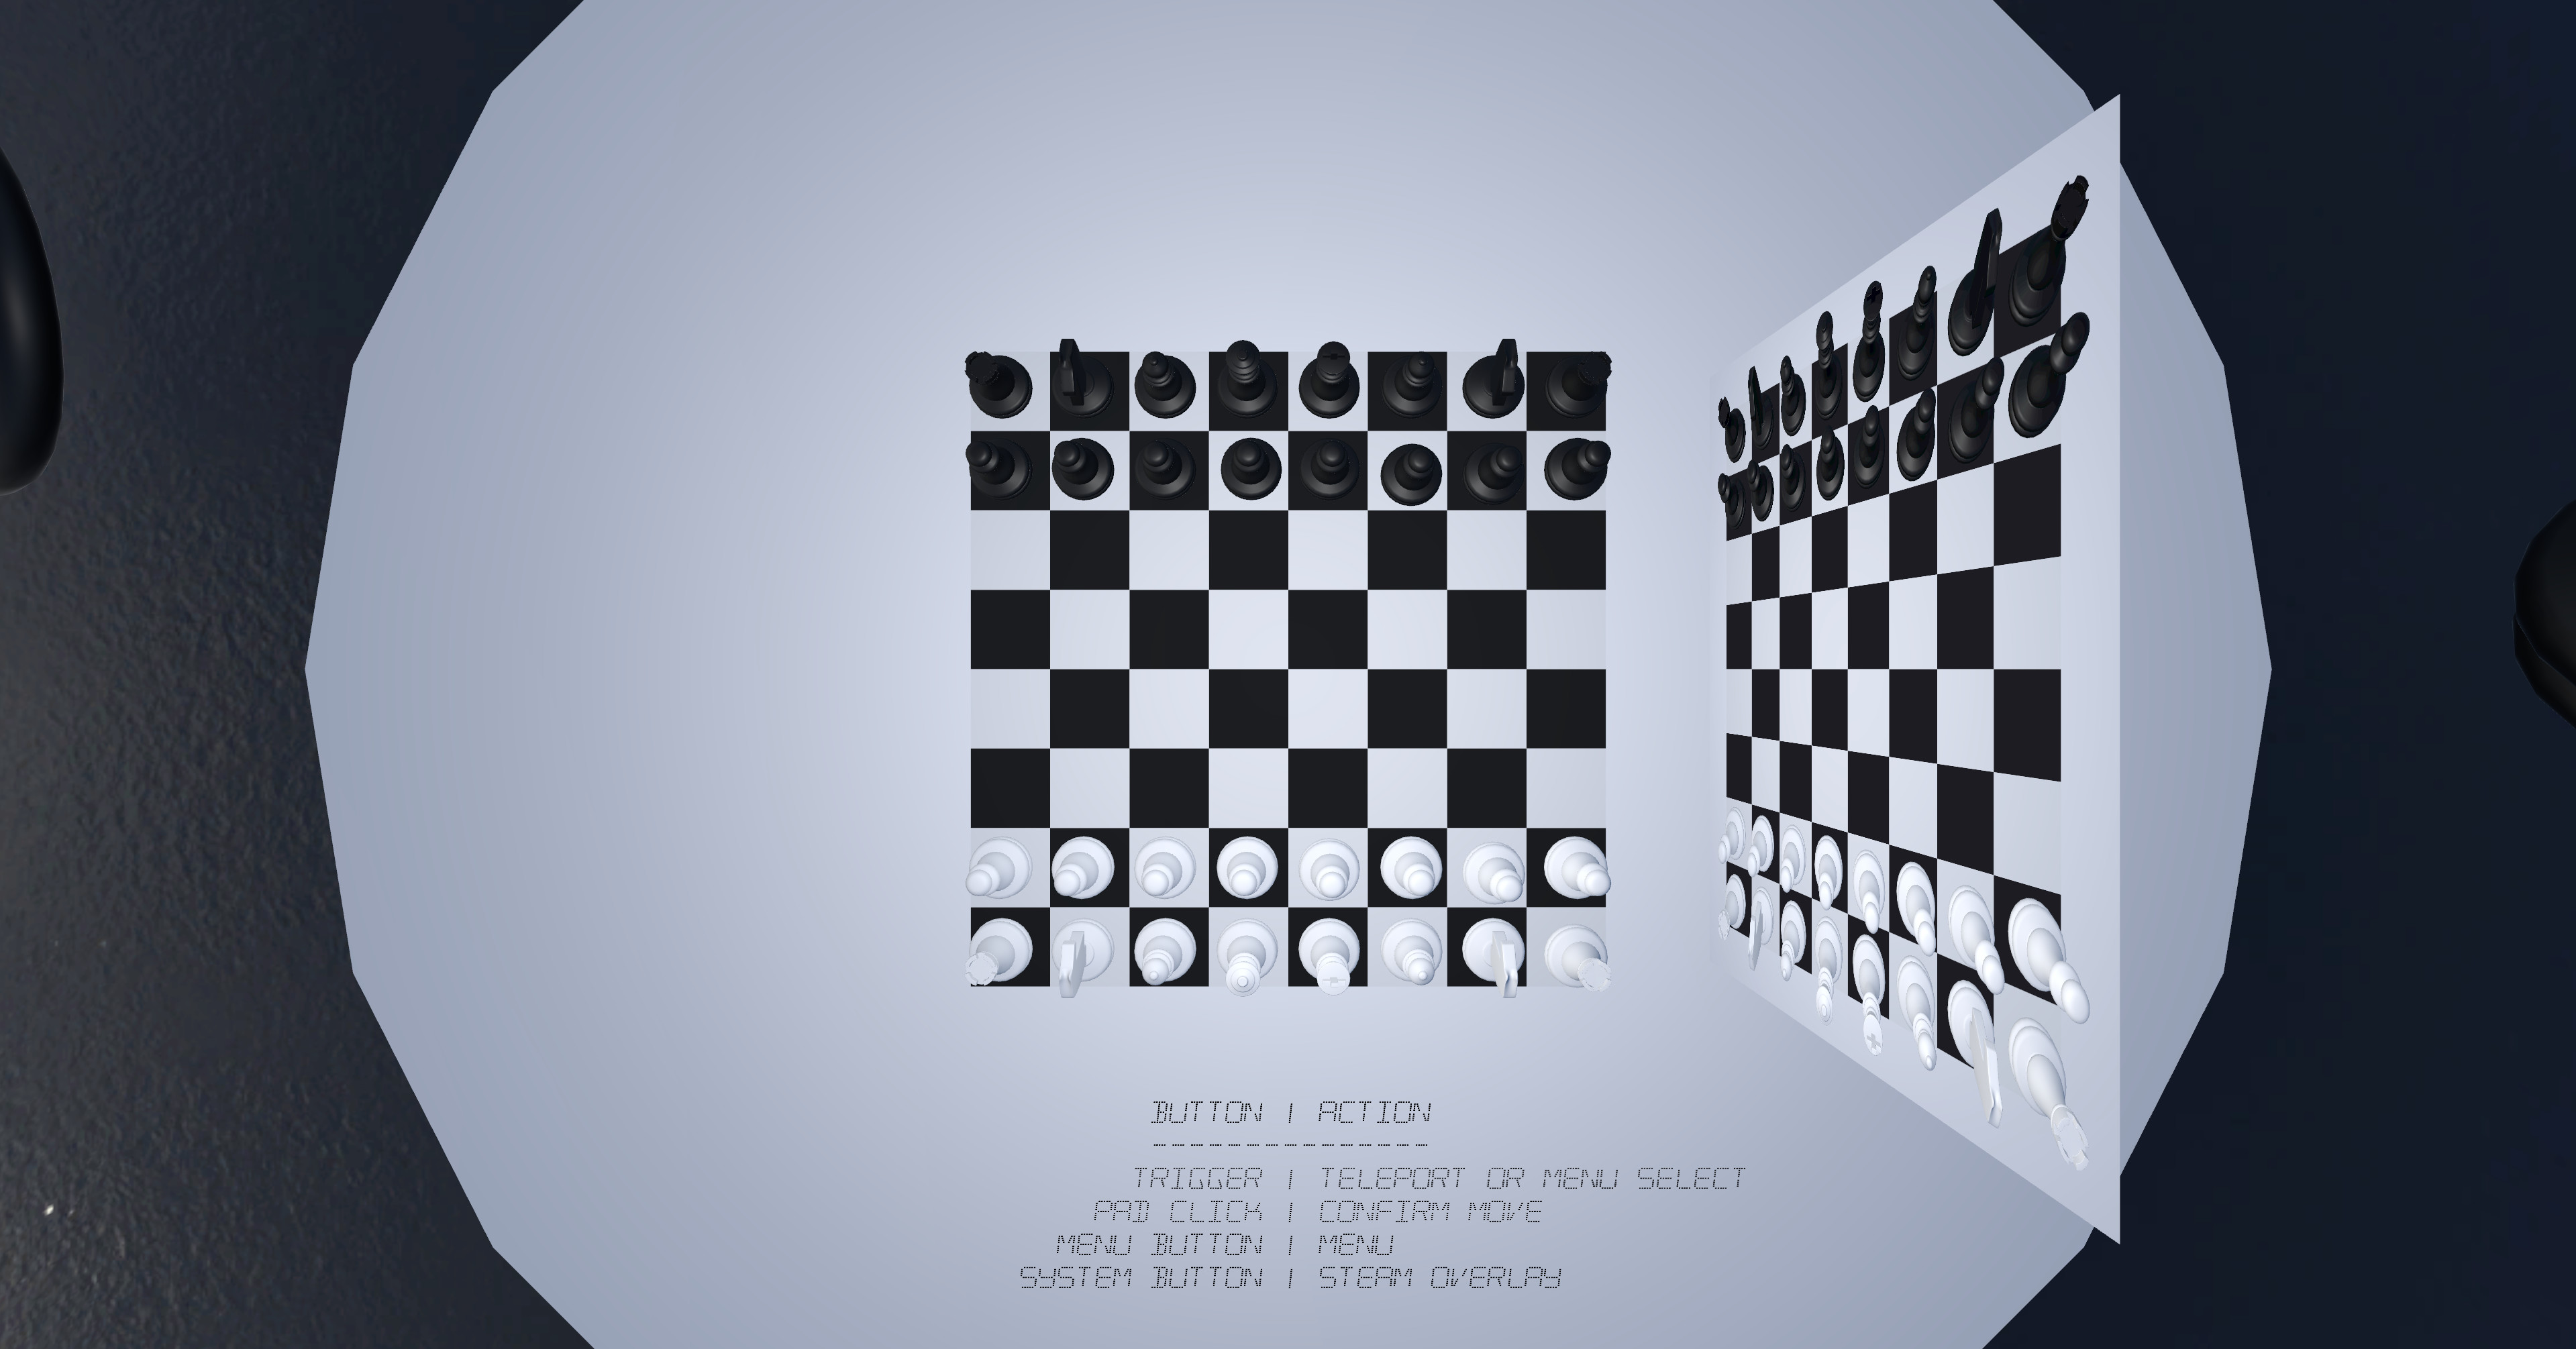 Very Real Chess screenshot